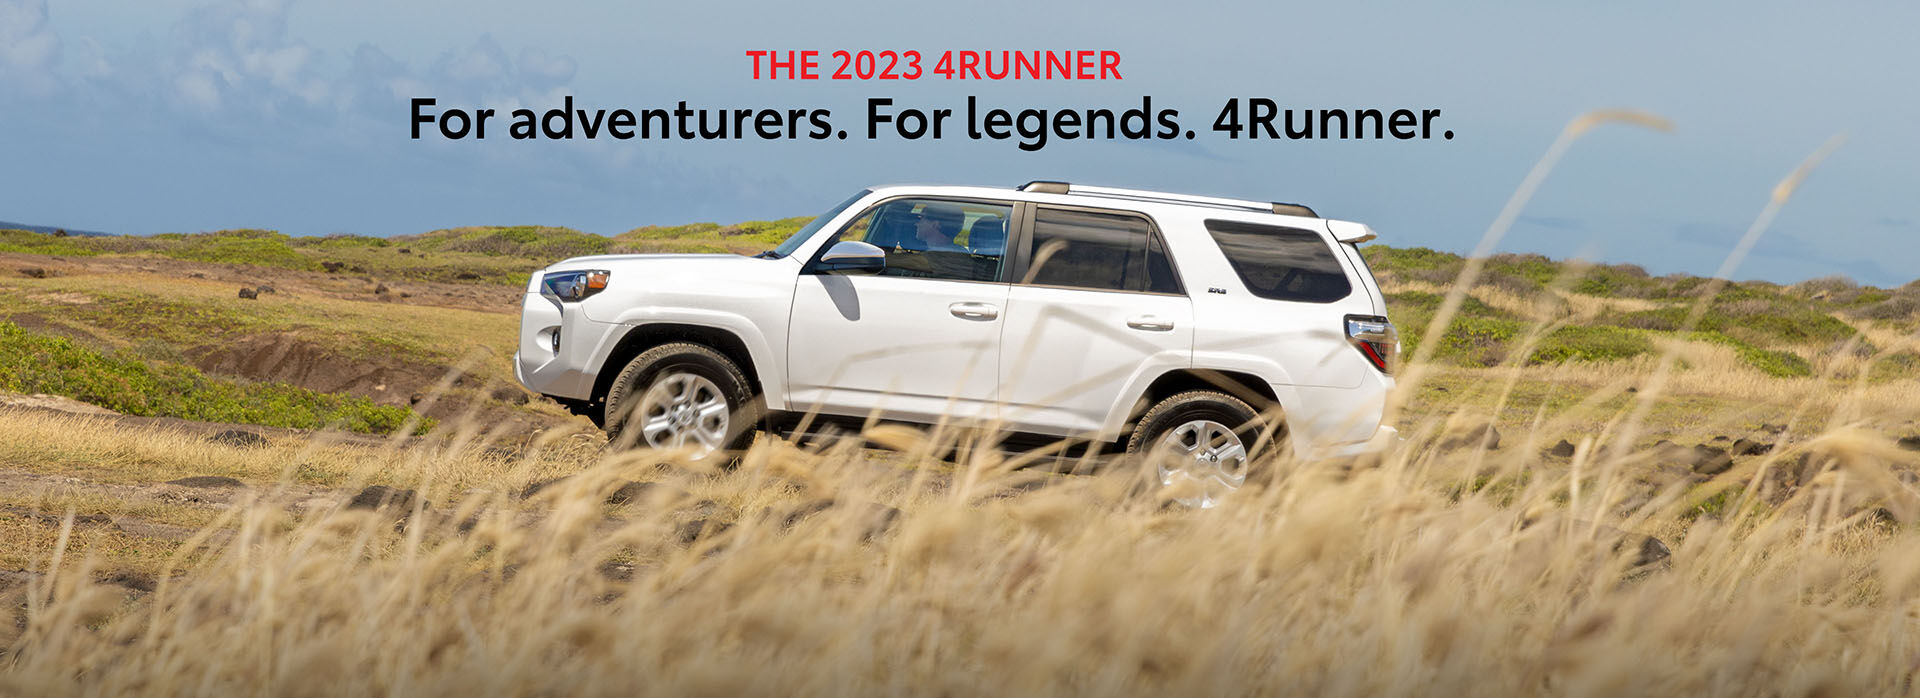 The 2023 4Runner. For Adventurers. For Legends. 4Runner.